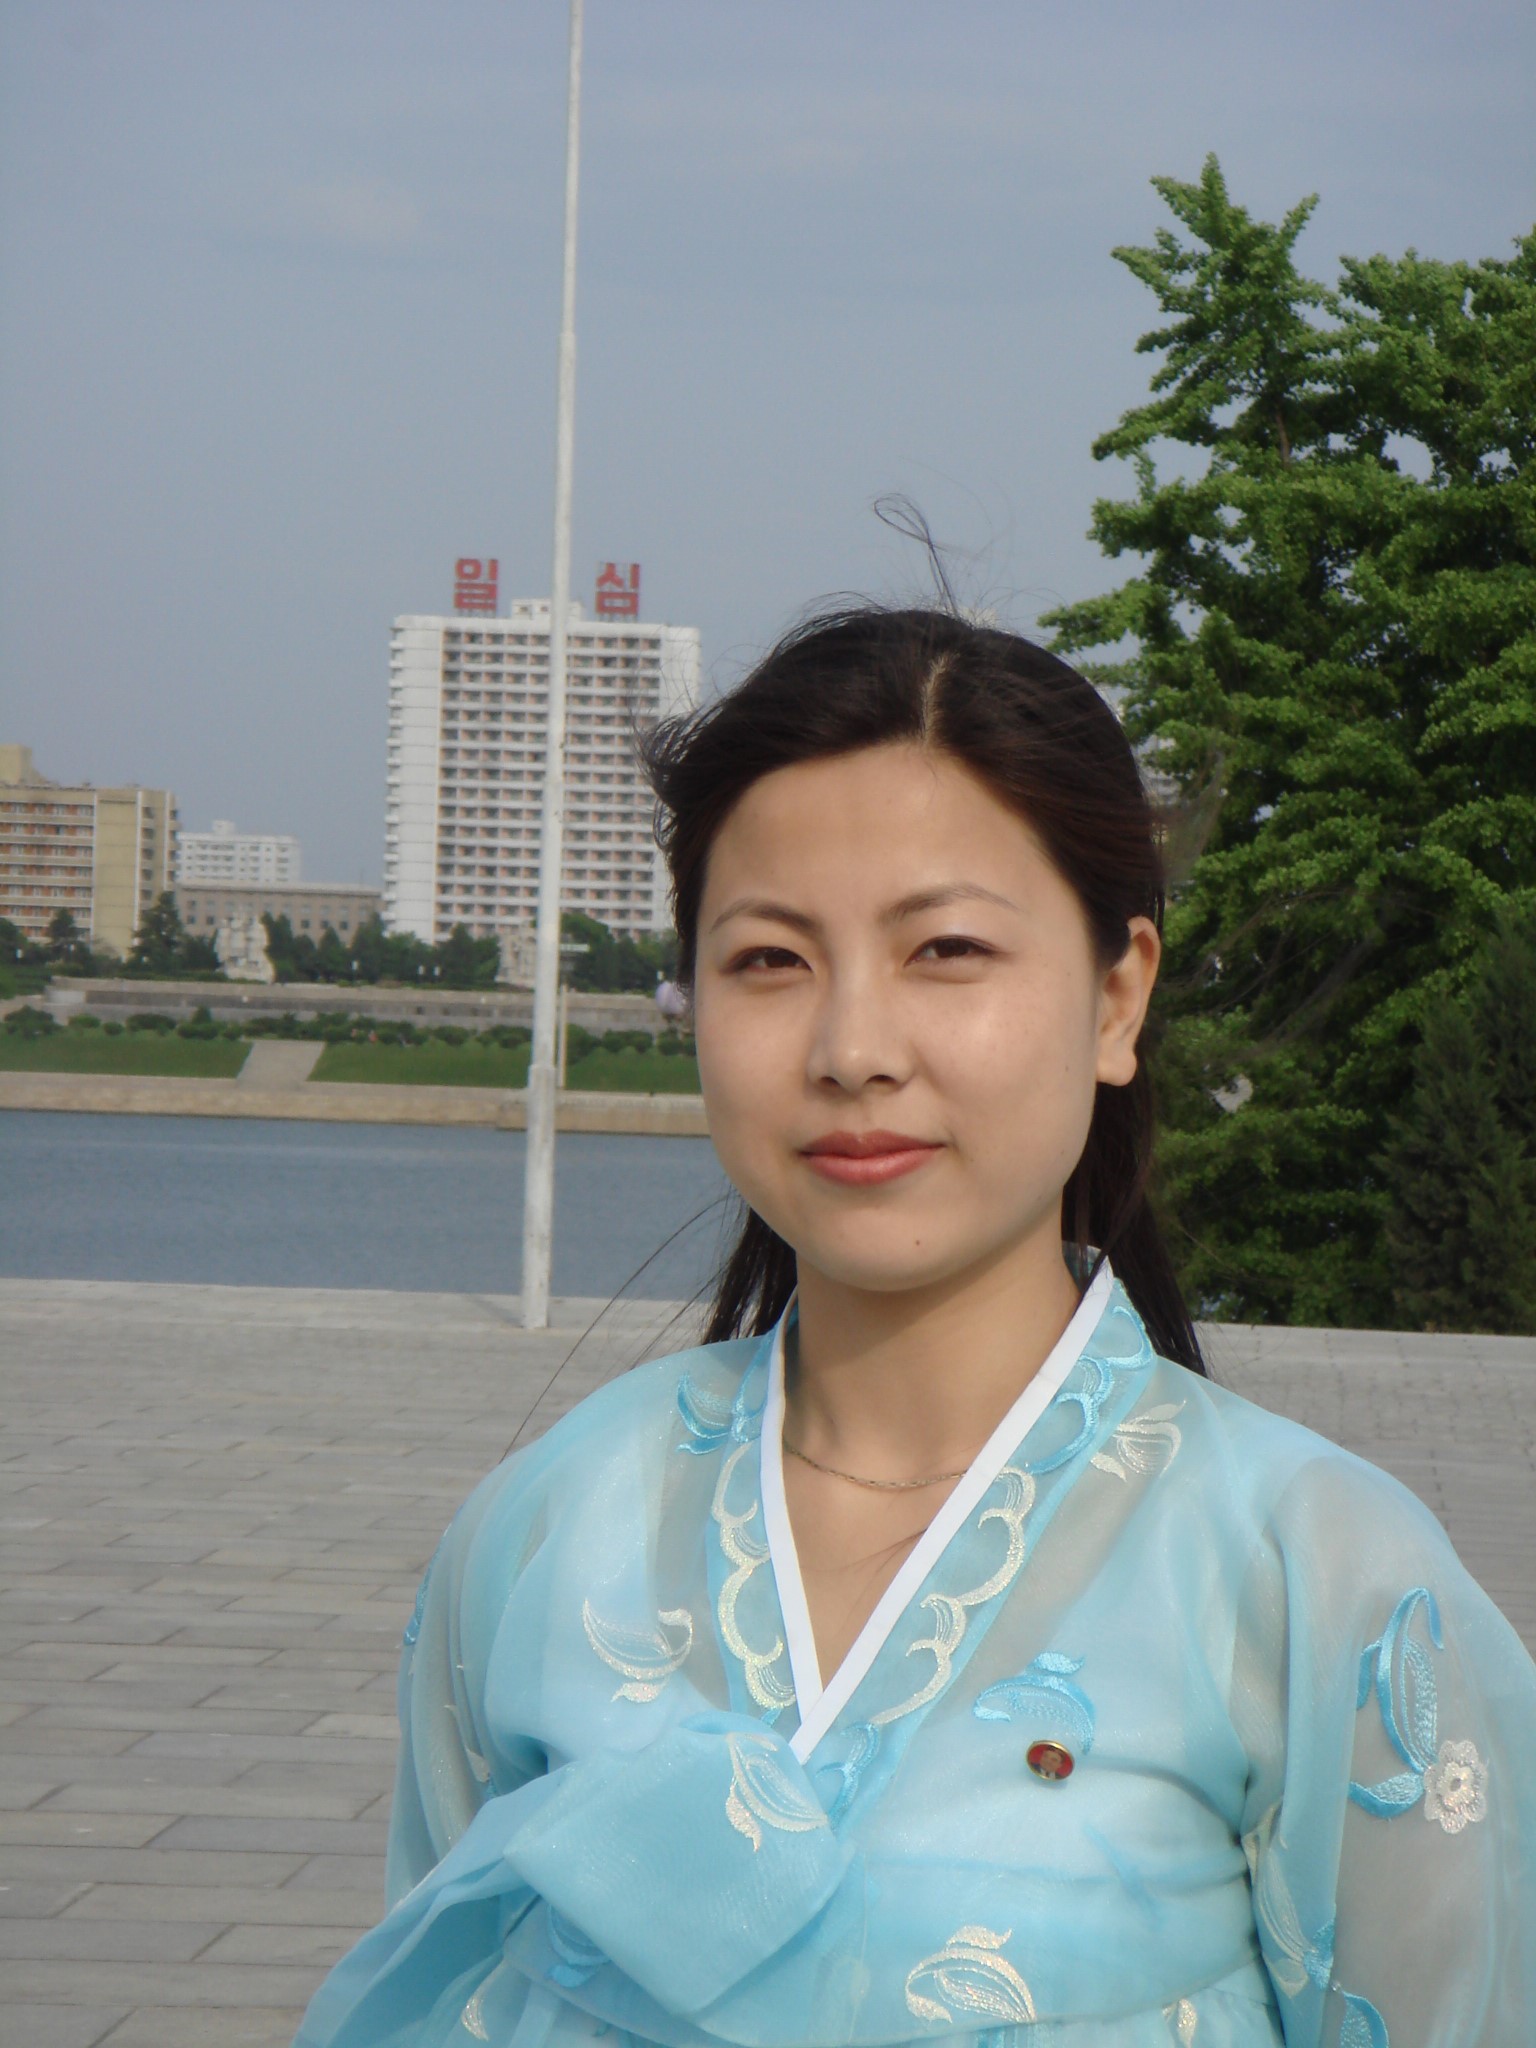 朝鲜族美女女子图片